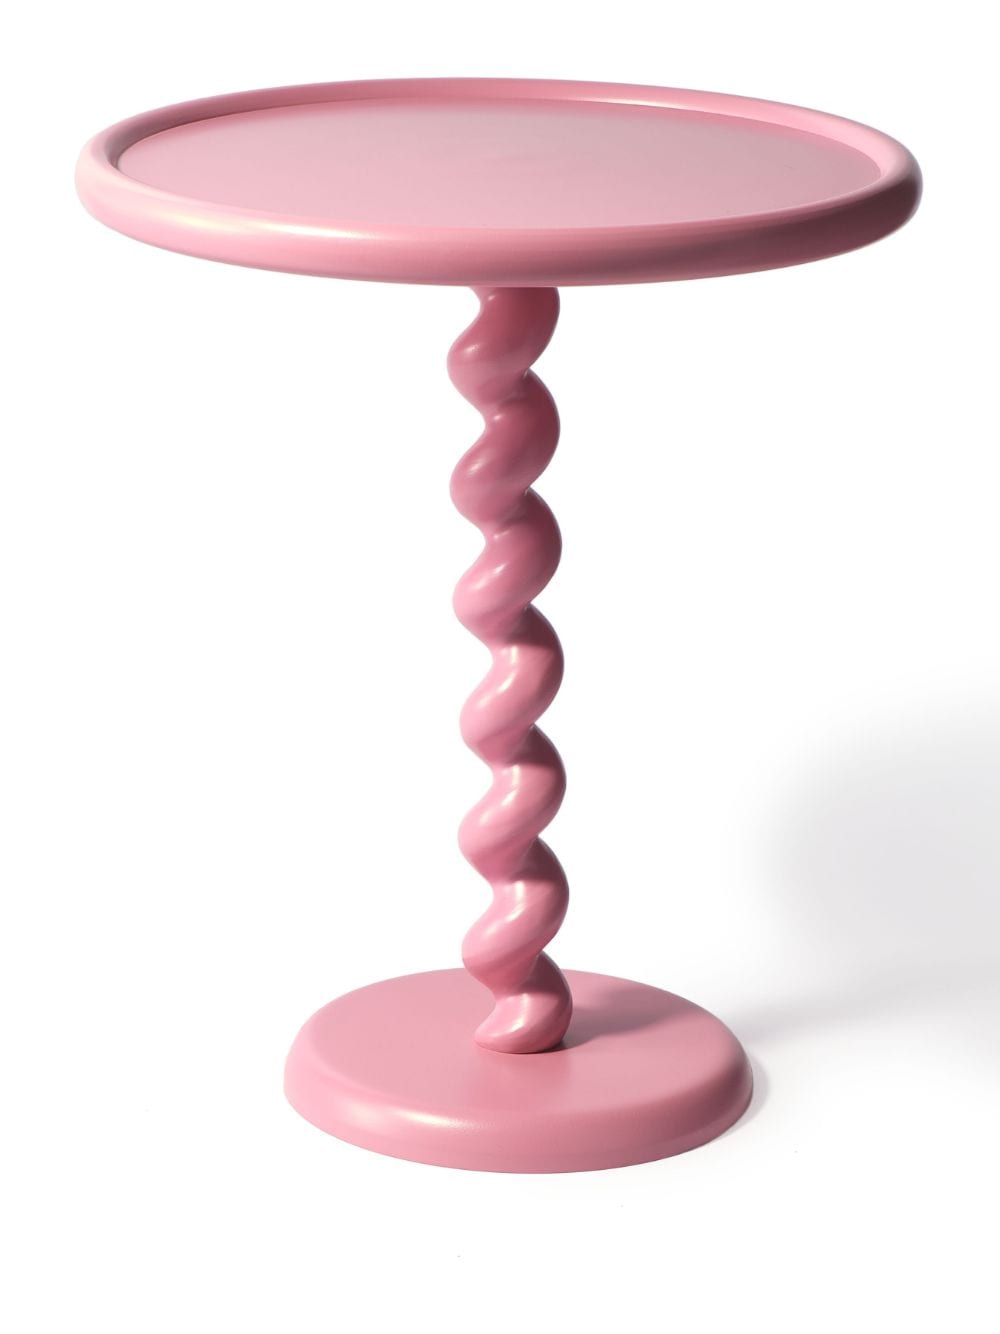 POLSPOTTEN Twister side table - Pink von POLSPOTTEN